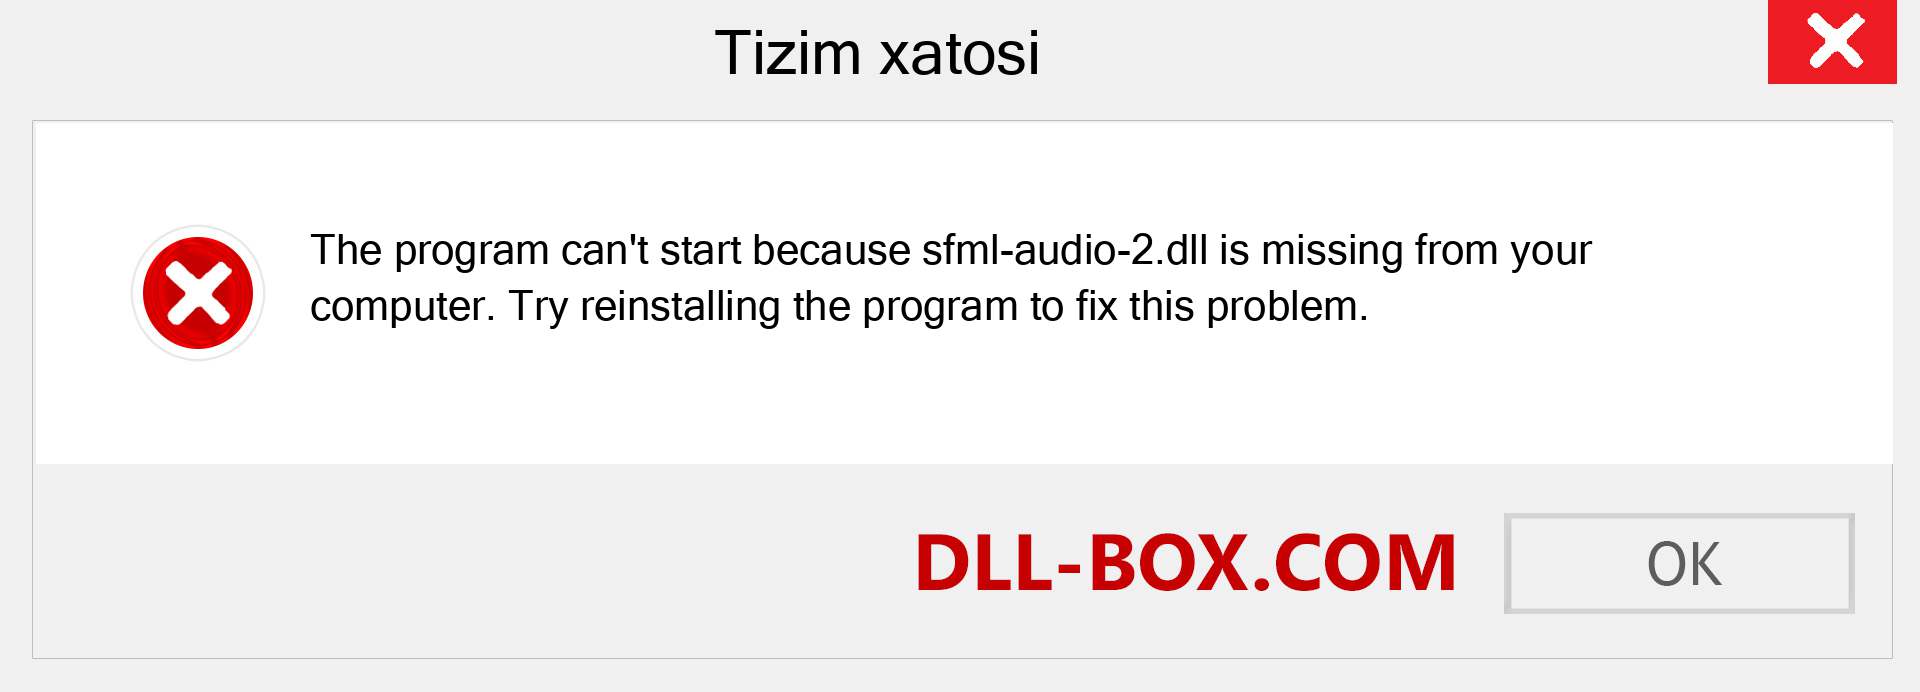 sfml-audio-2.dll fayli yo'qolganmi?. Windows 7, 8, 10 uchun yuklab olish - Windowsda sfml-audio-2 dll etishmayotgan xatoni tuzating, rasmlar, rasmlar